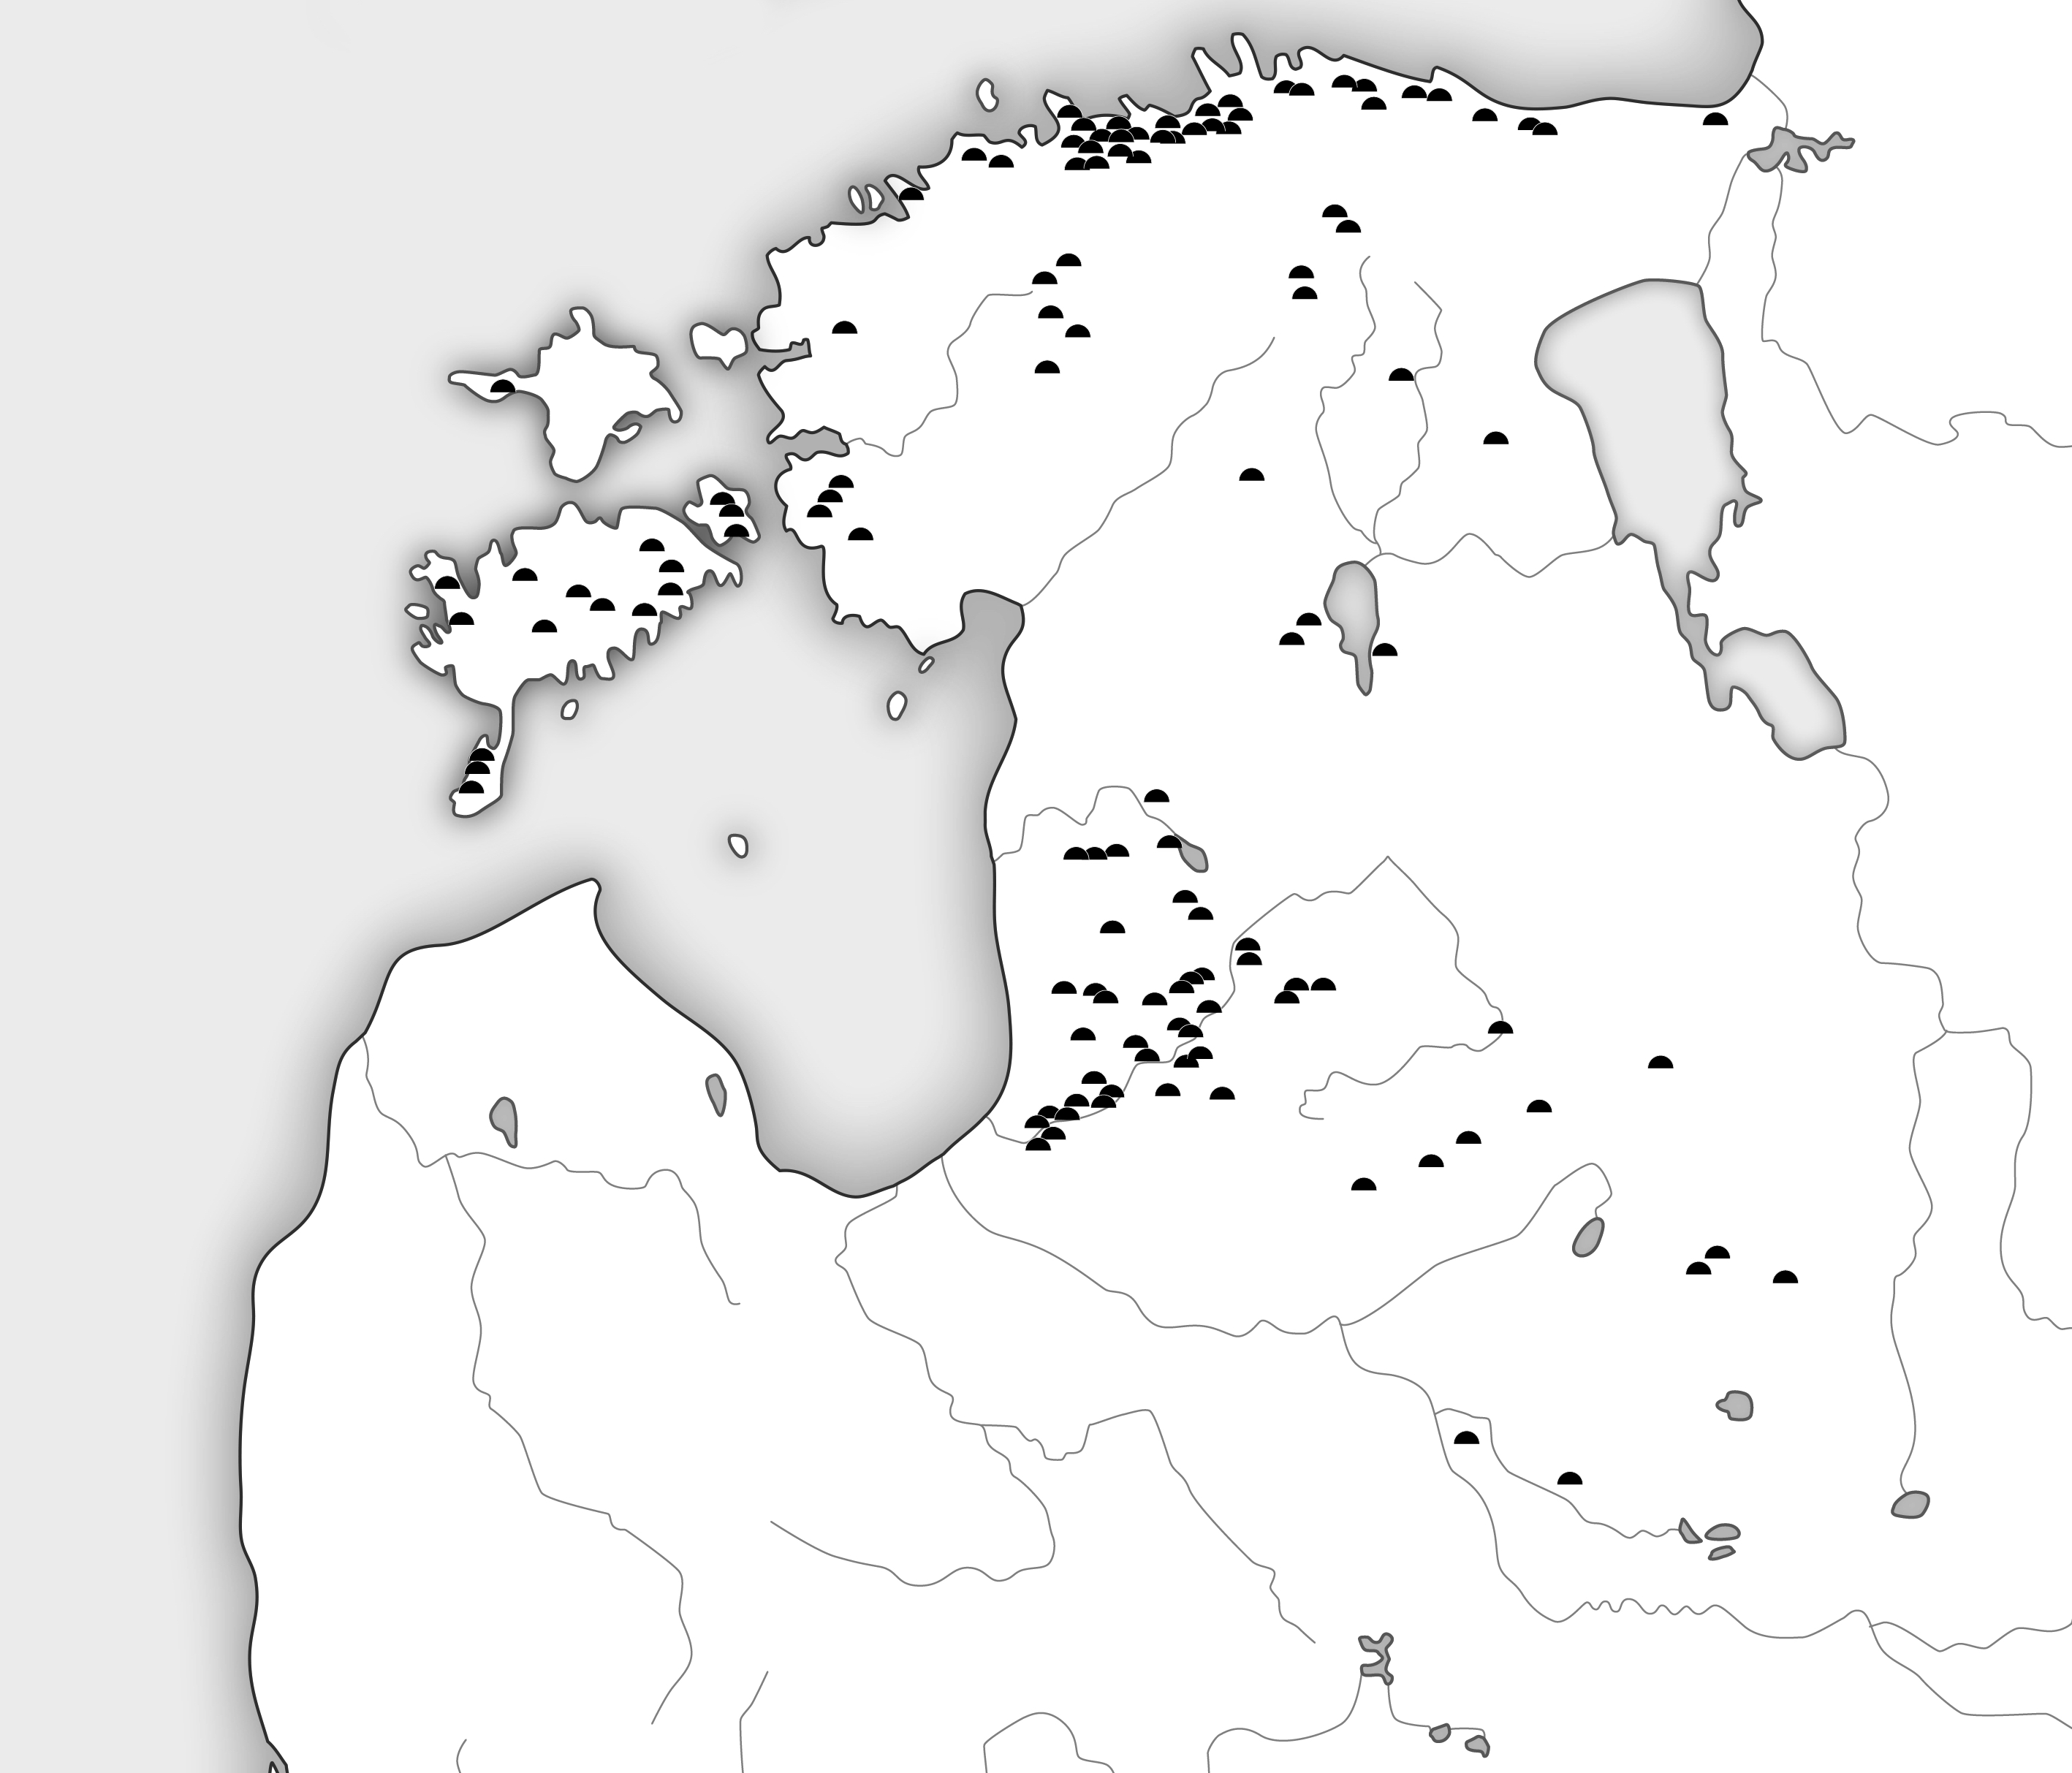 Kaardil märgitud kivikirstkalmete leiukohad Eesti ja Läti aladel - paiknevad eelkõige Põhja-Eesti ranniku lähedal, Lääne-Eesti rannikul (Lihula ümbruses), Saaremaal. Lätis leidub kivikirstkalmeid enim läänerannikul, Koiva ja Salatsi jõe vahelisel alal. 